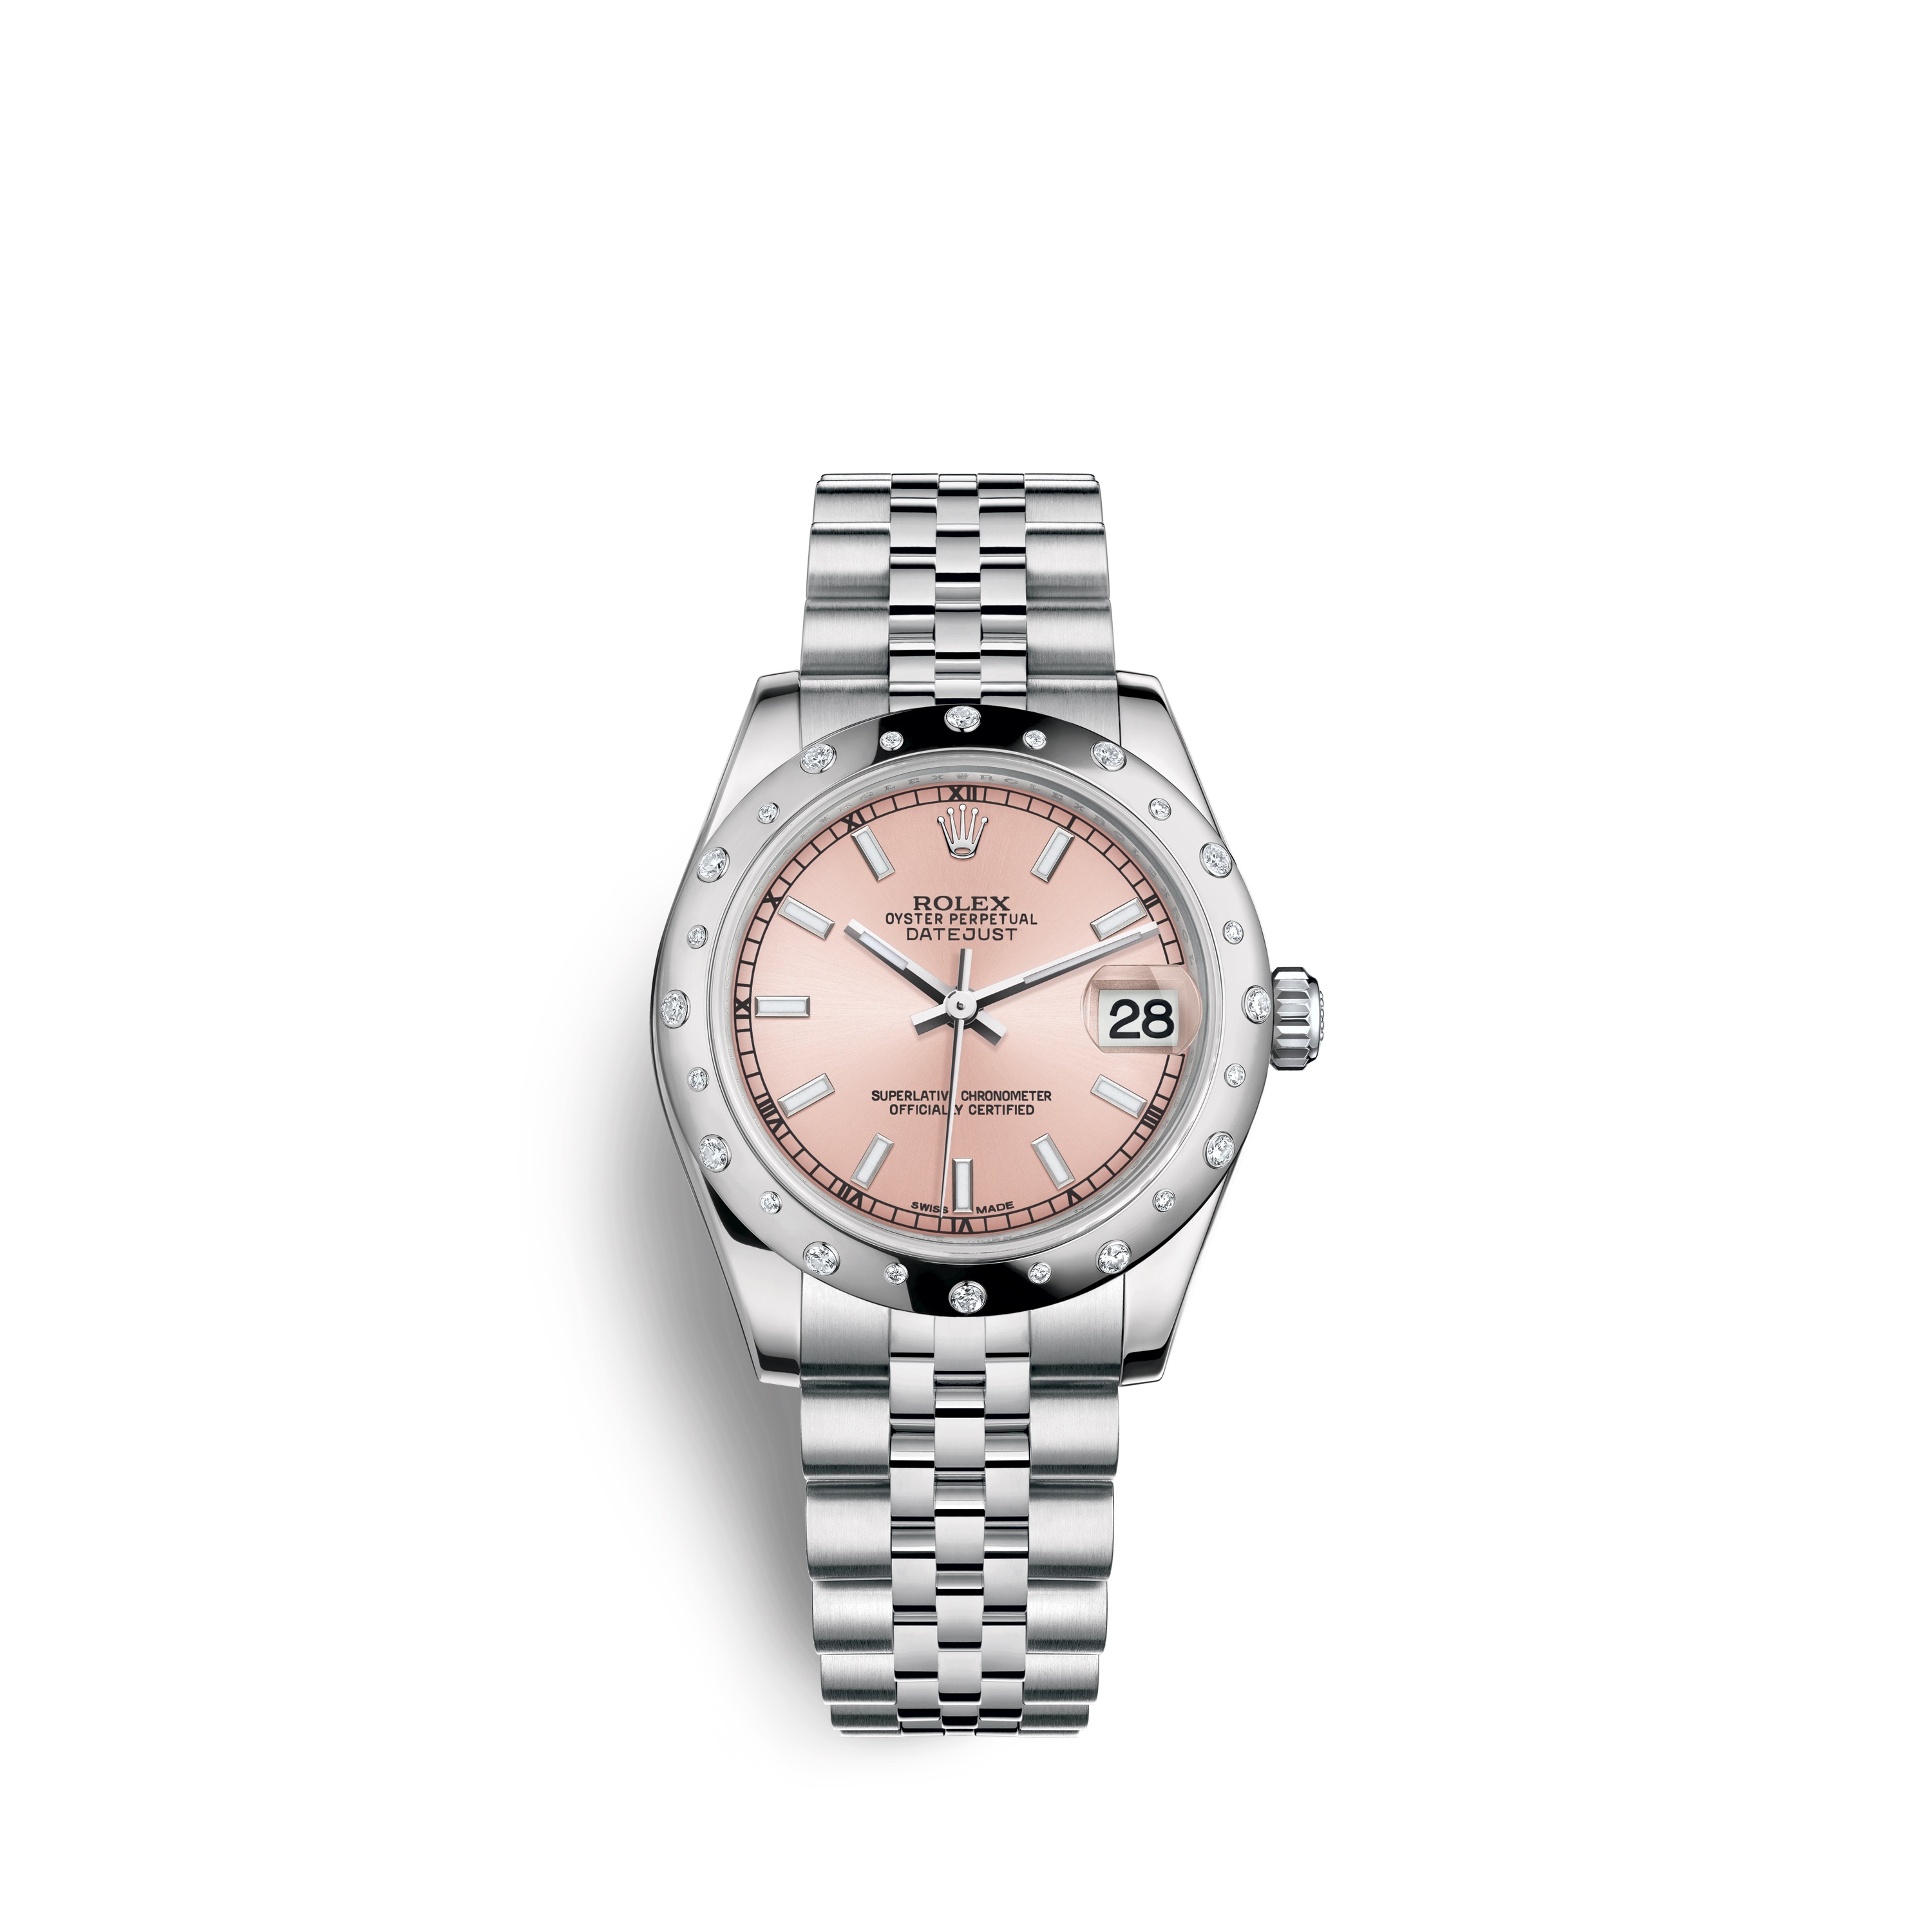 Datejust 31 178344 White Gold & Diamonds Watch (Pink)